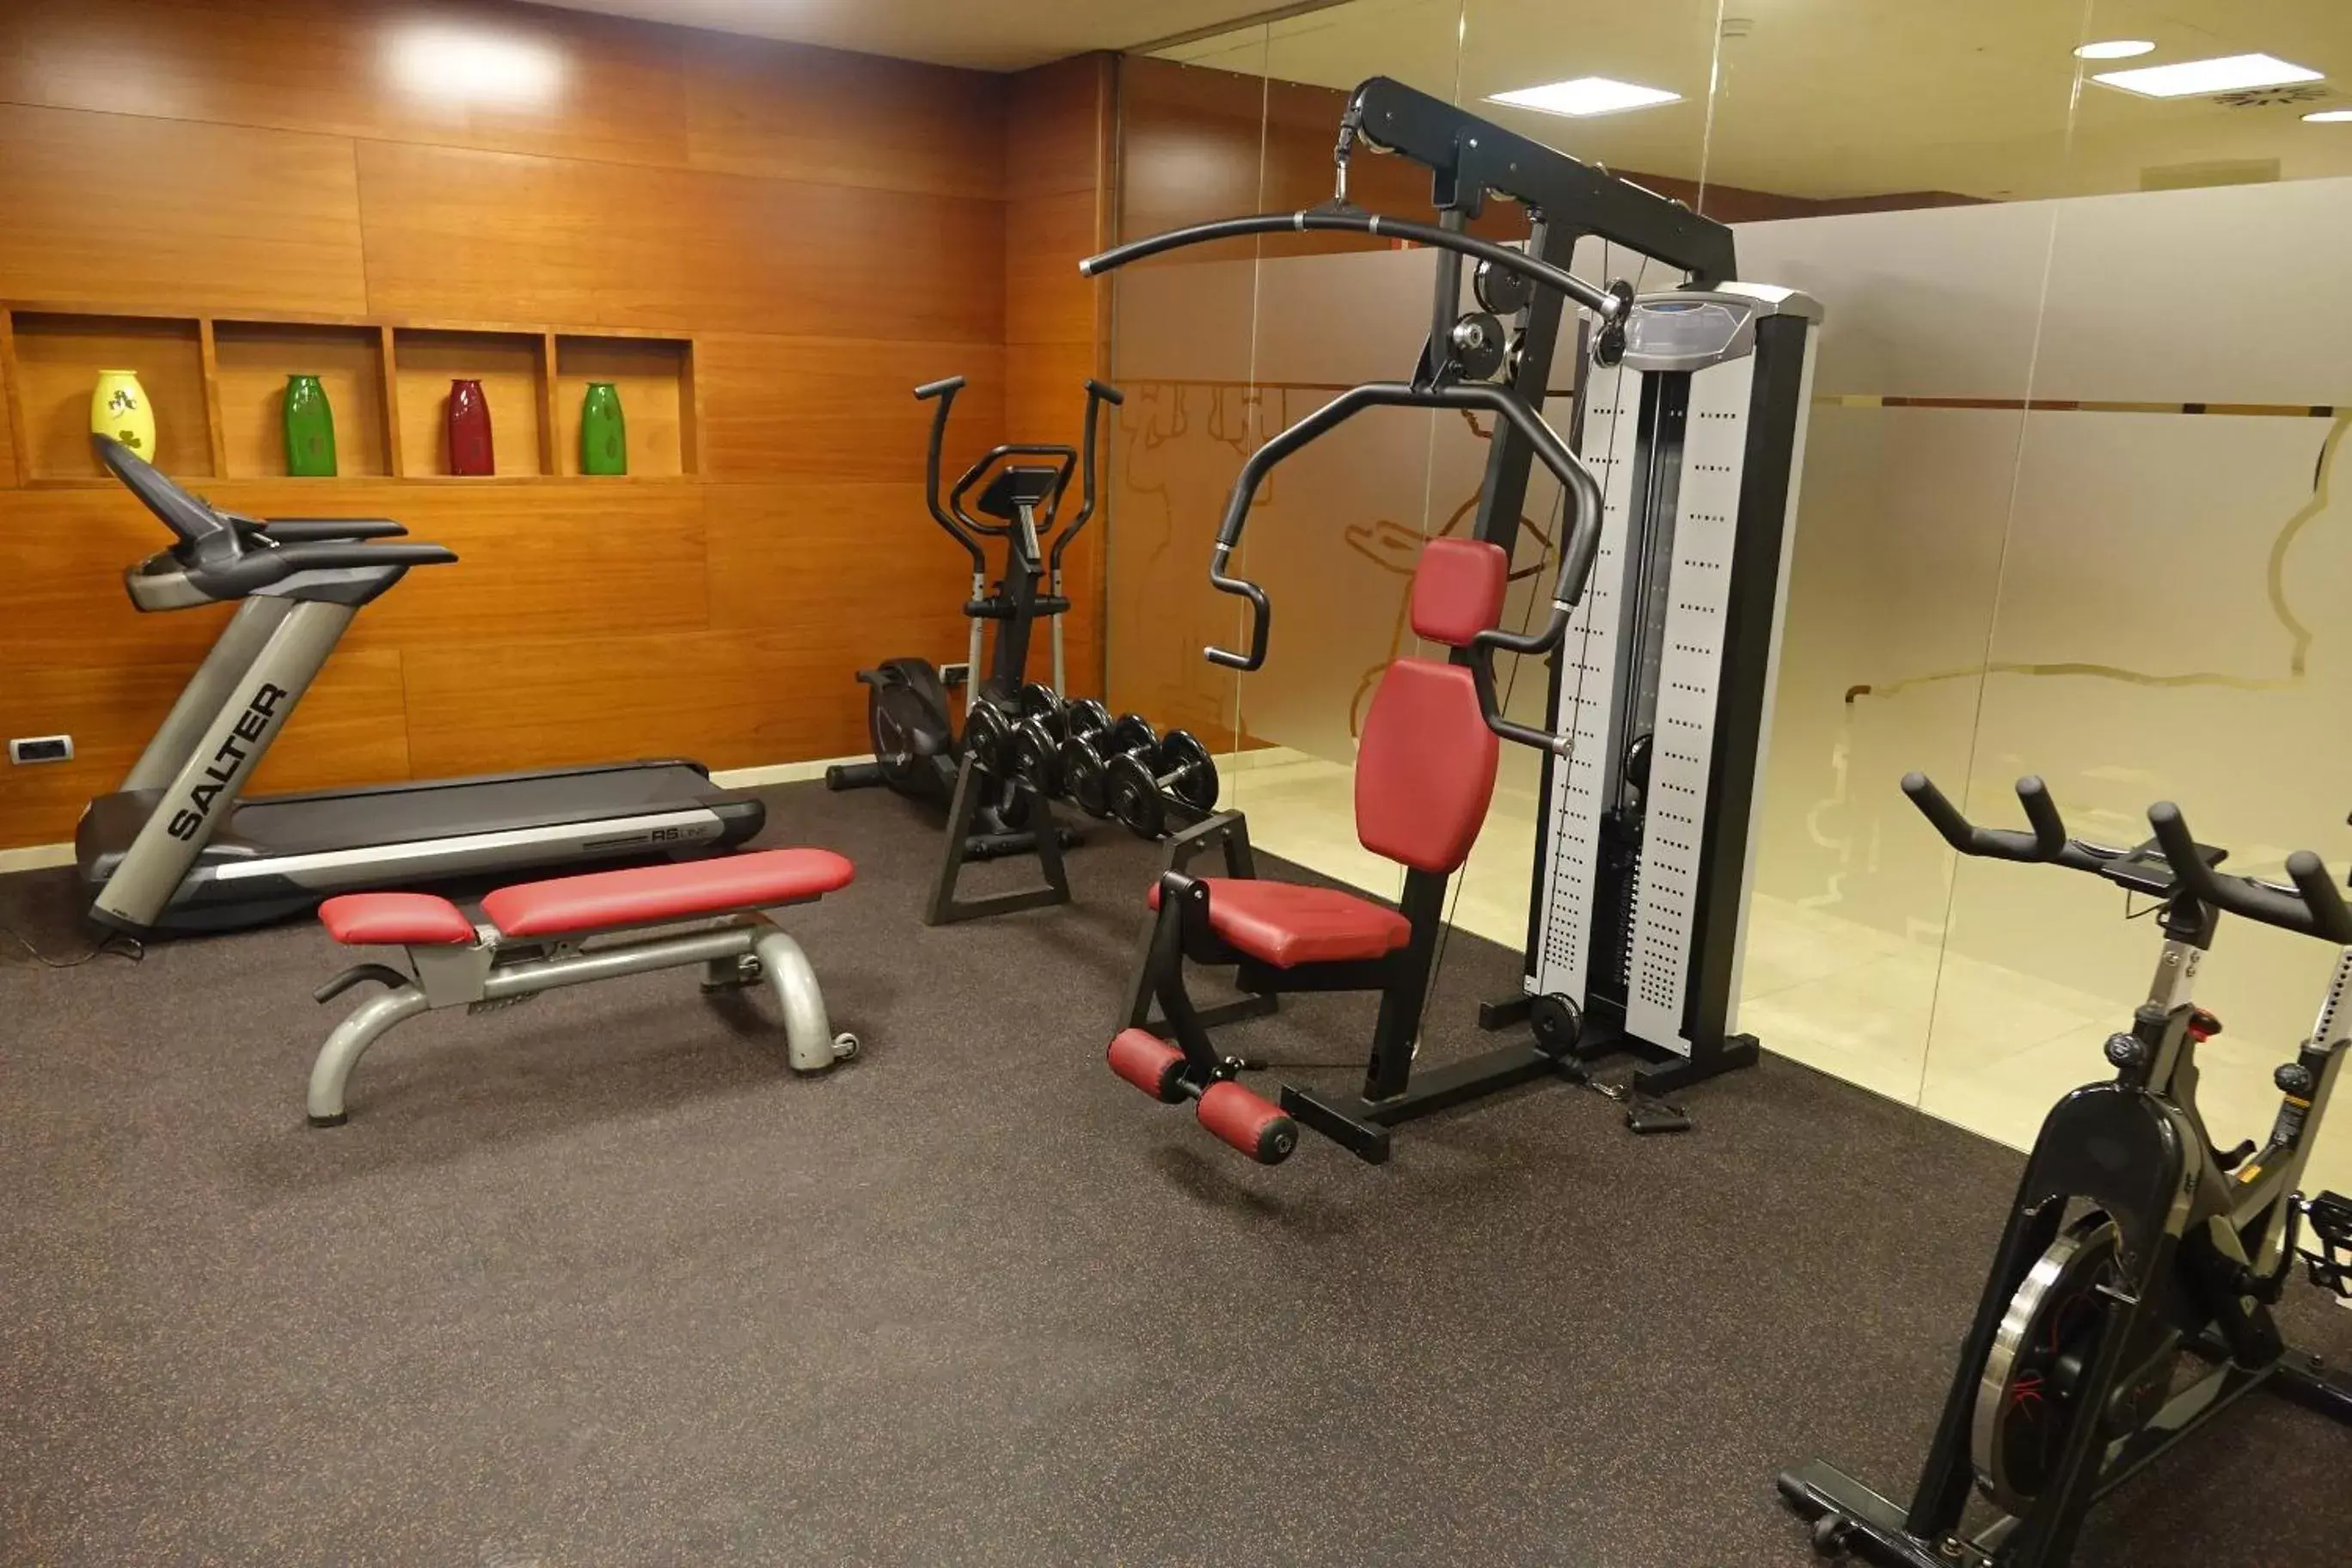 Fitness centre/facilities, Fitness Center/Facilities in Acevi Villarroel